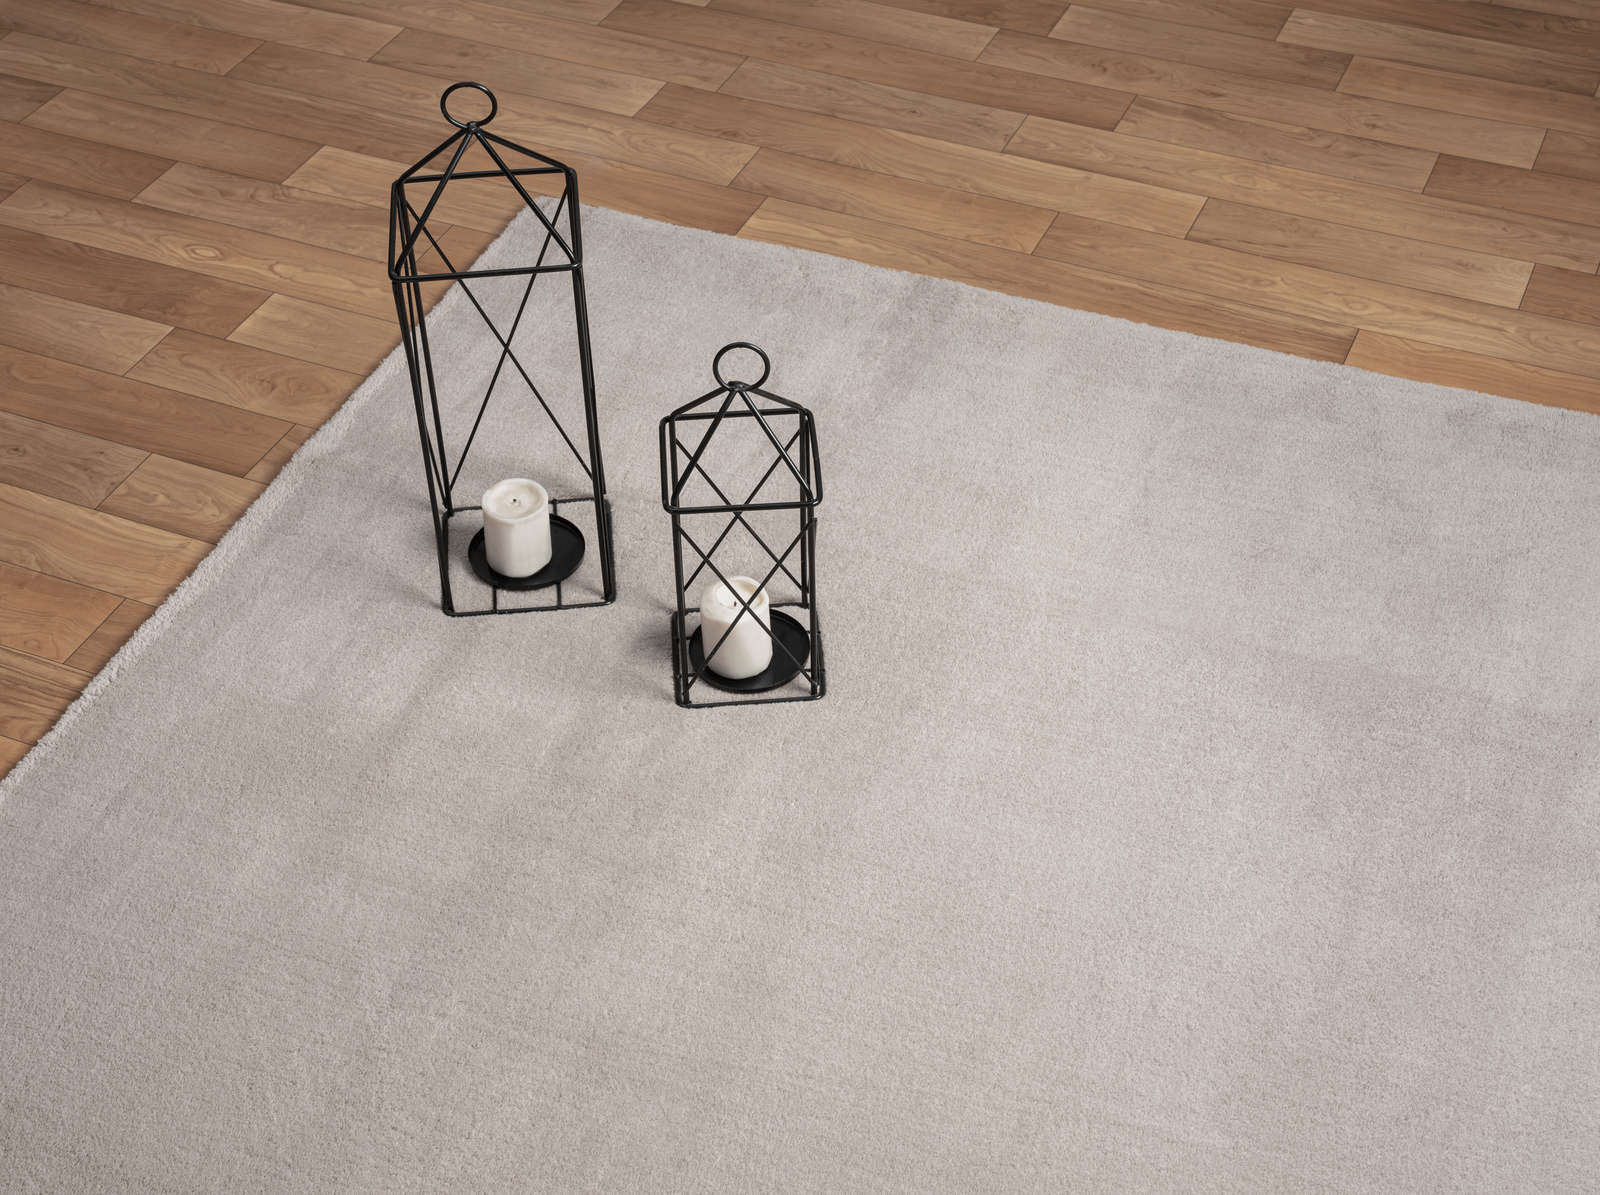             Modischer Hochflor Teppich in Sand – 230 x 160 cm
        